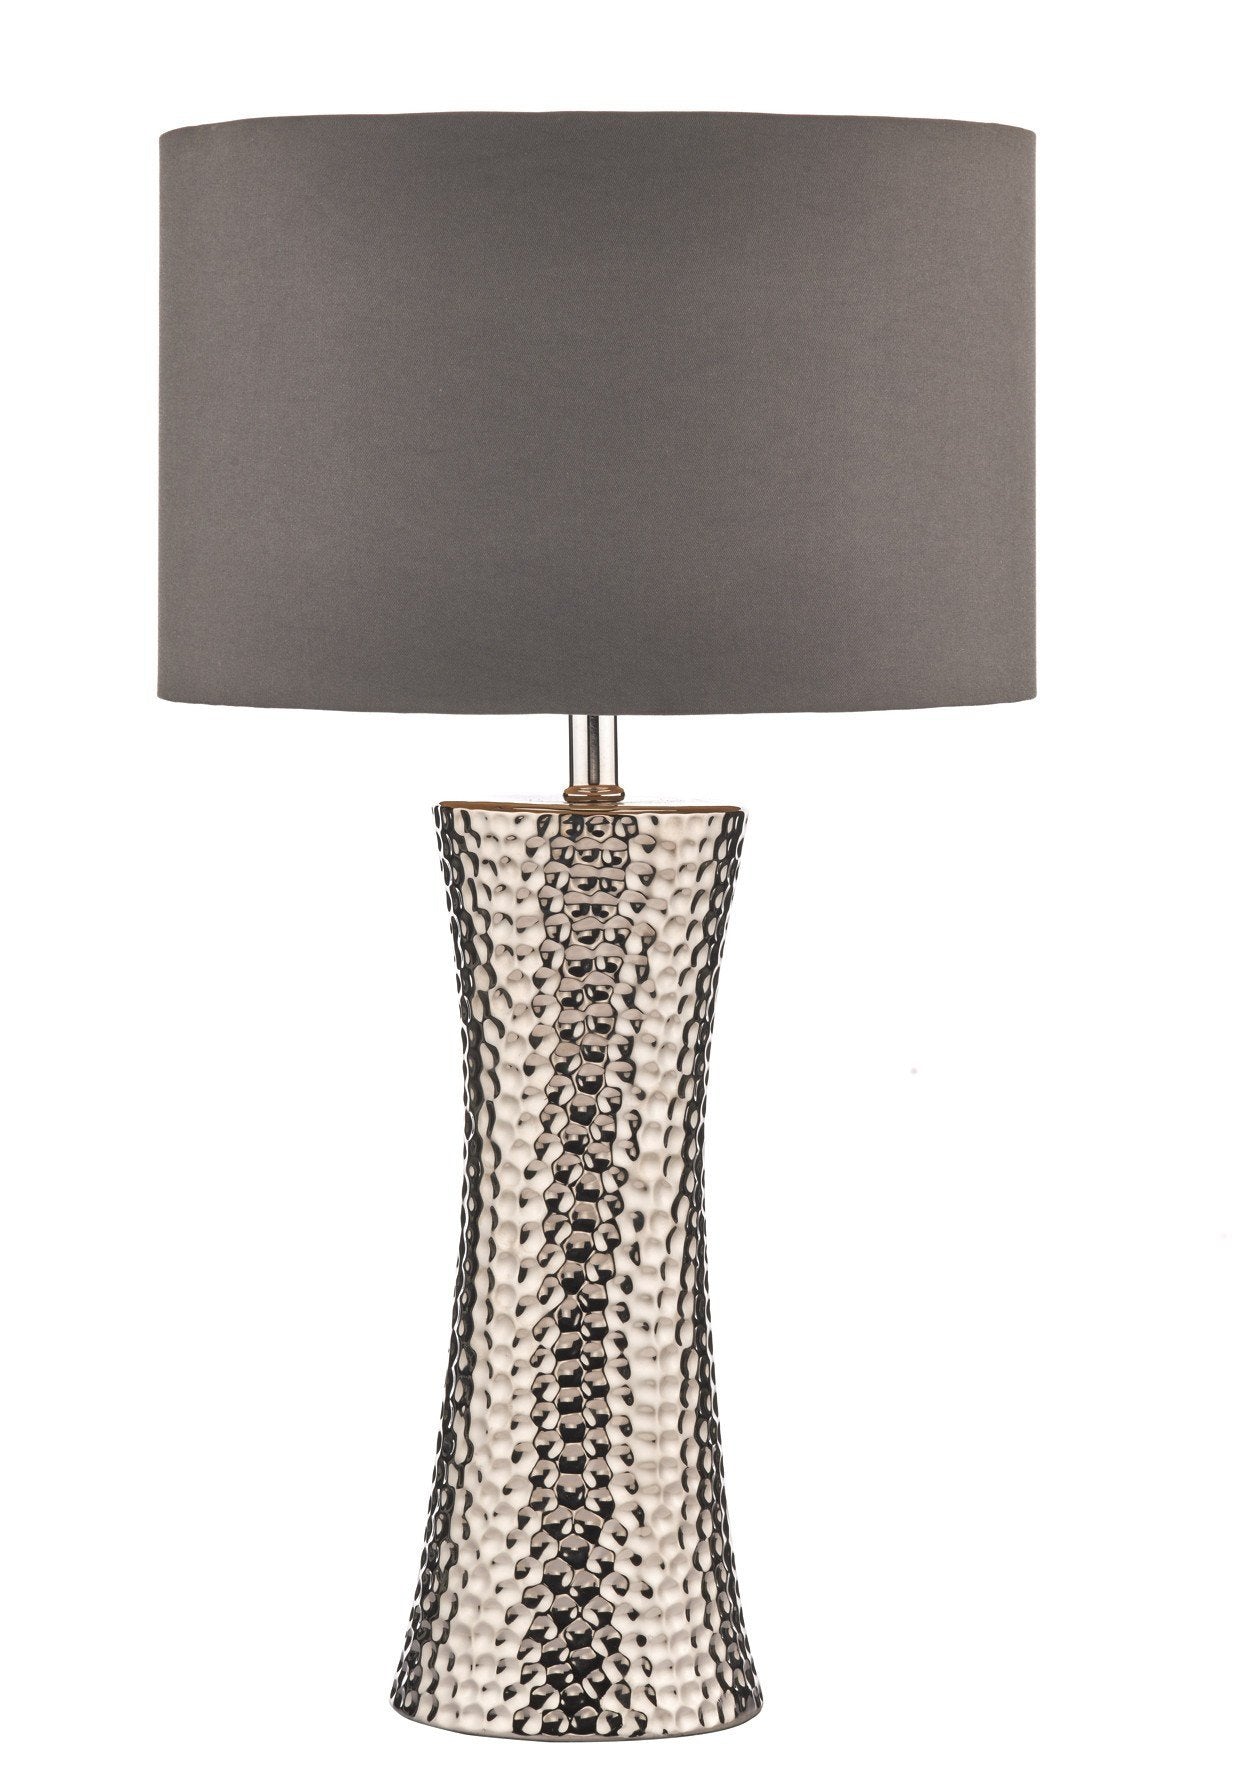 Bokara Table Lamp with Natural Cotton Shade - London Lighting - 1